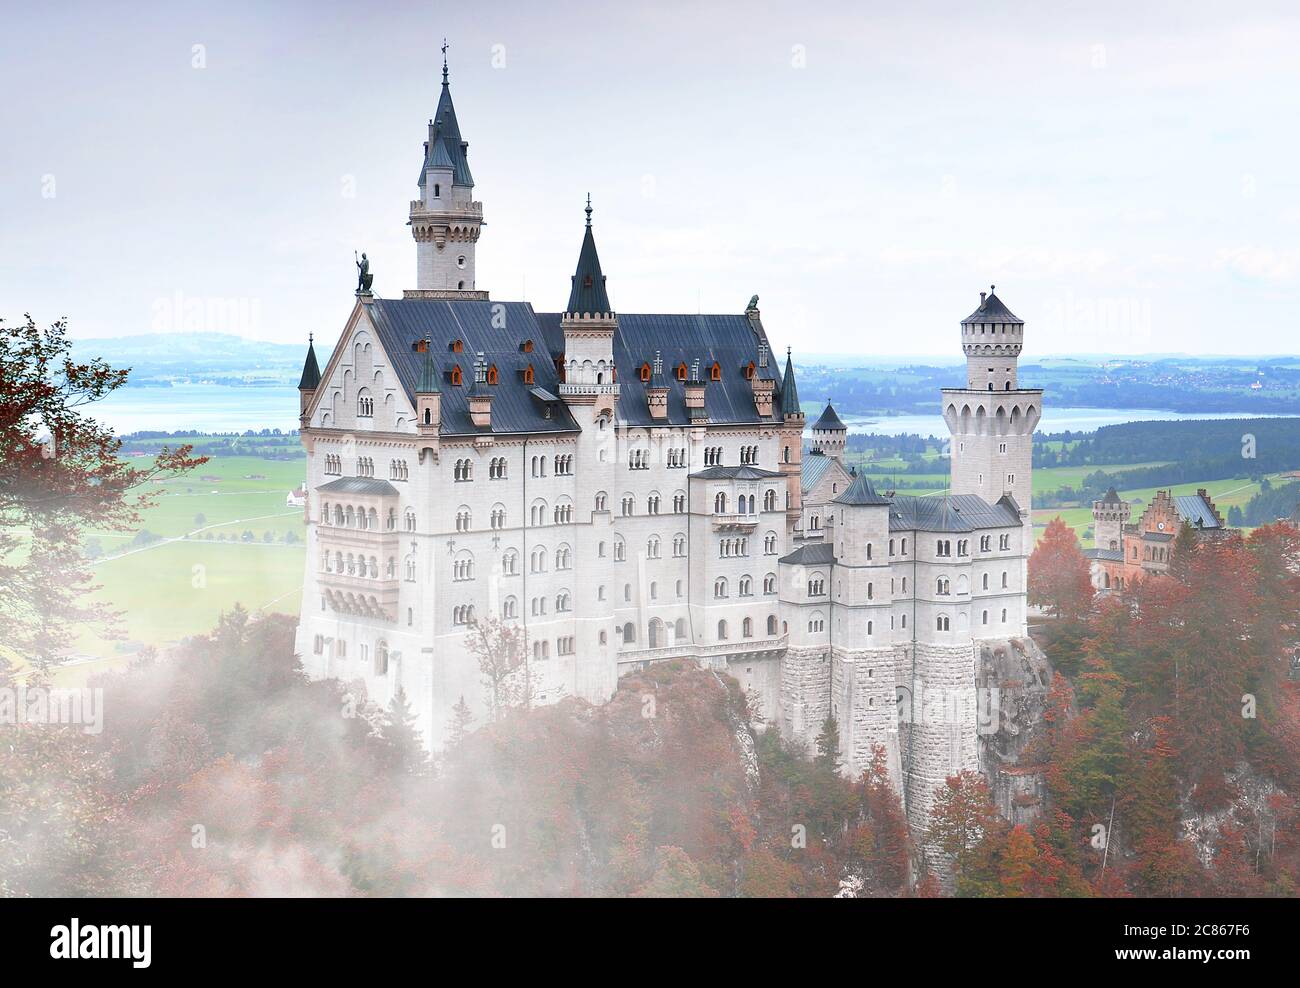 Neuschwanstein Castle or Schloss Neuschwanstein in foggy autumn day in southwest Bavaria, Germany Stock Photo